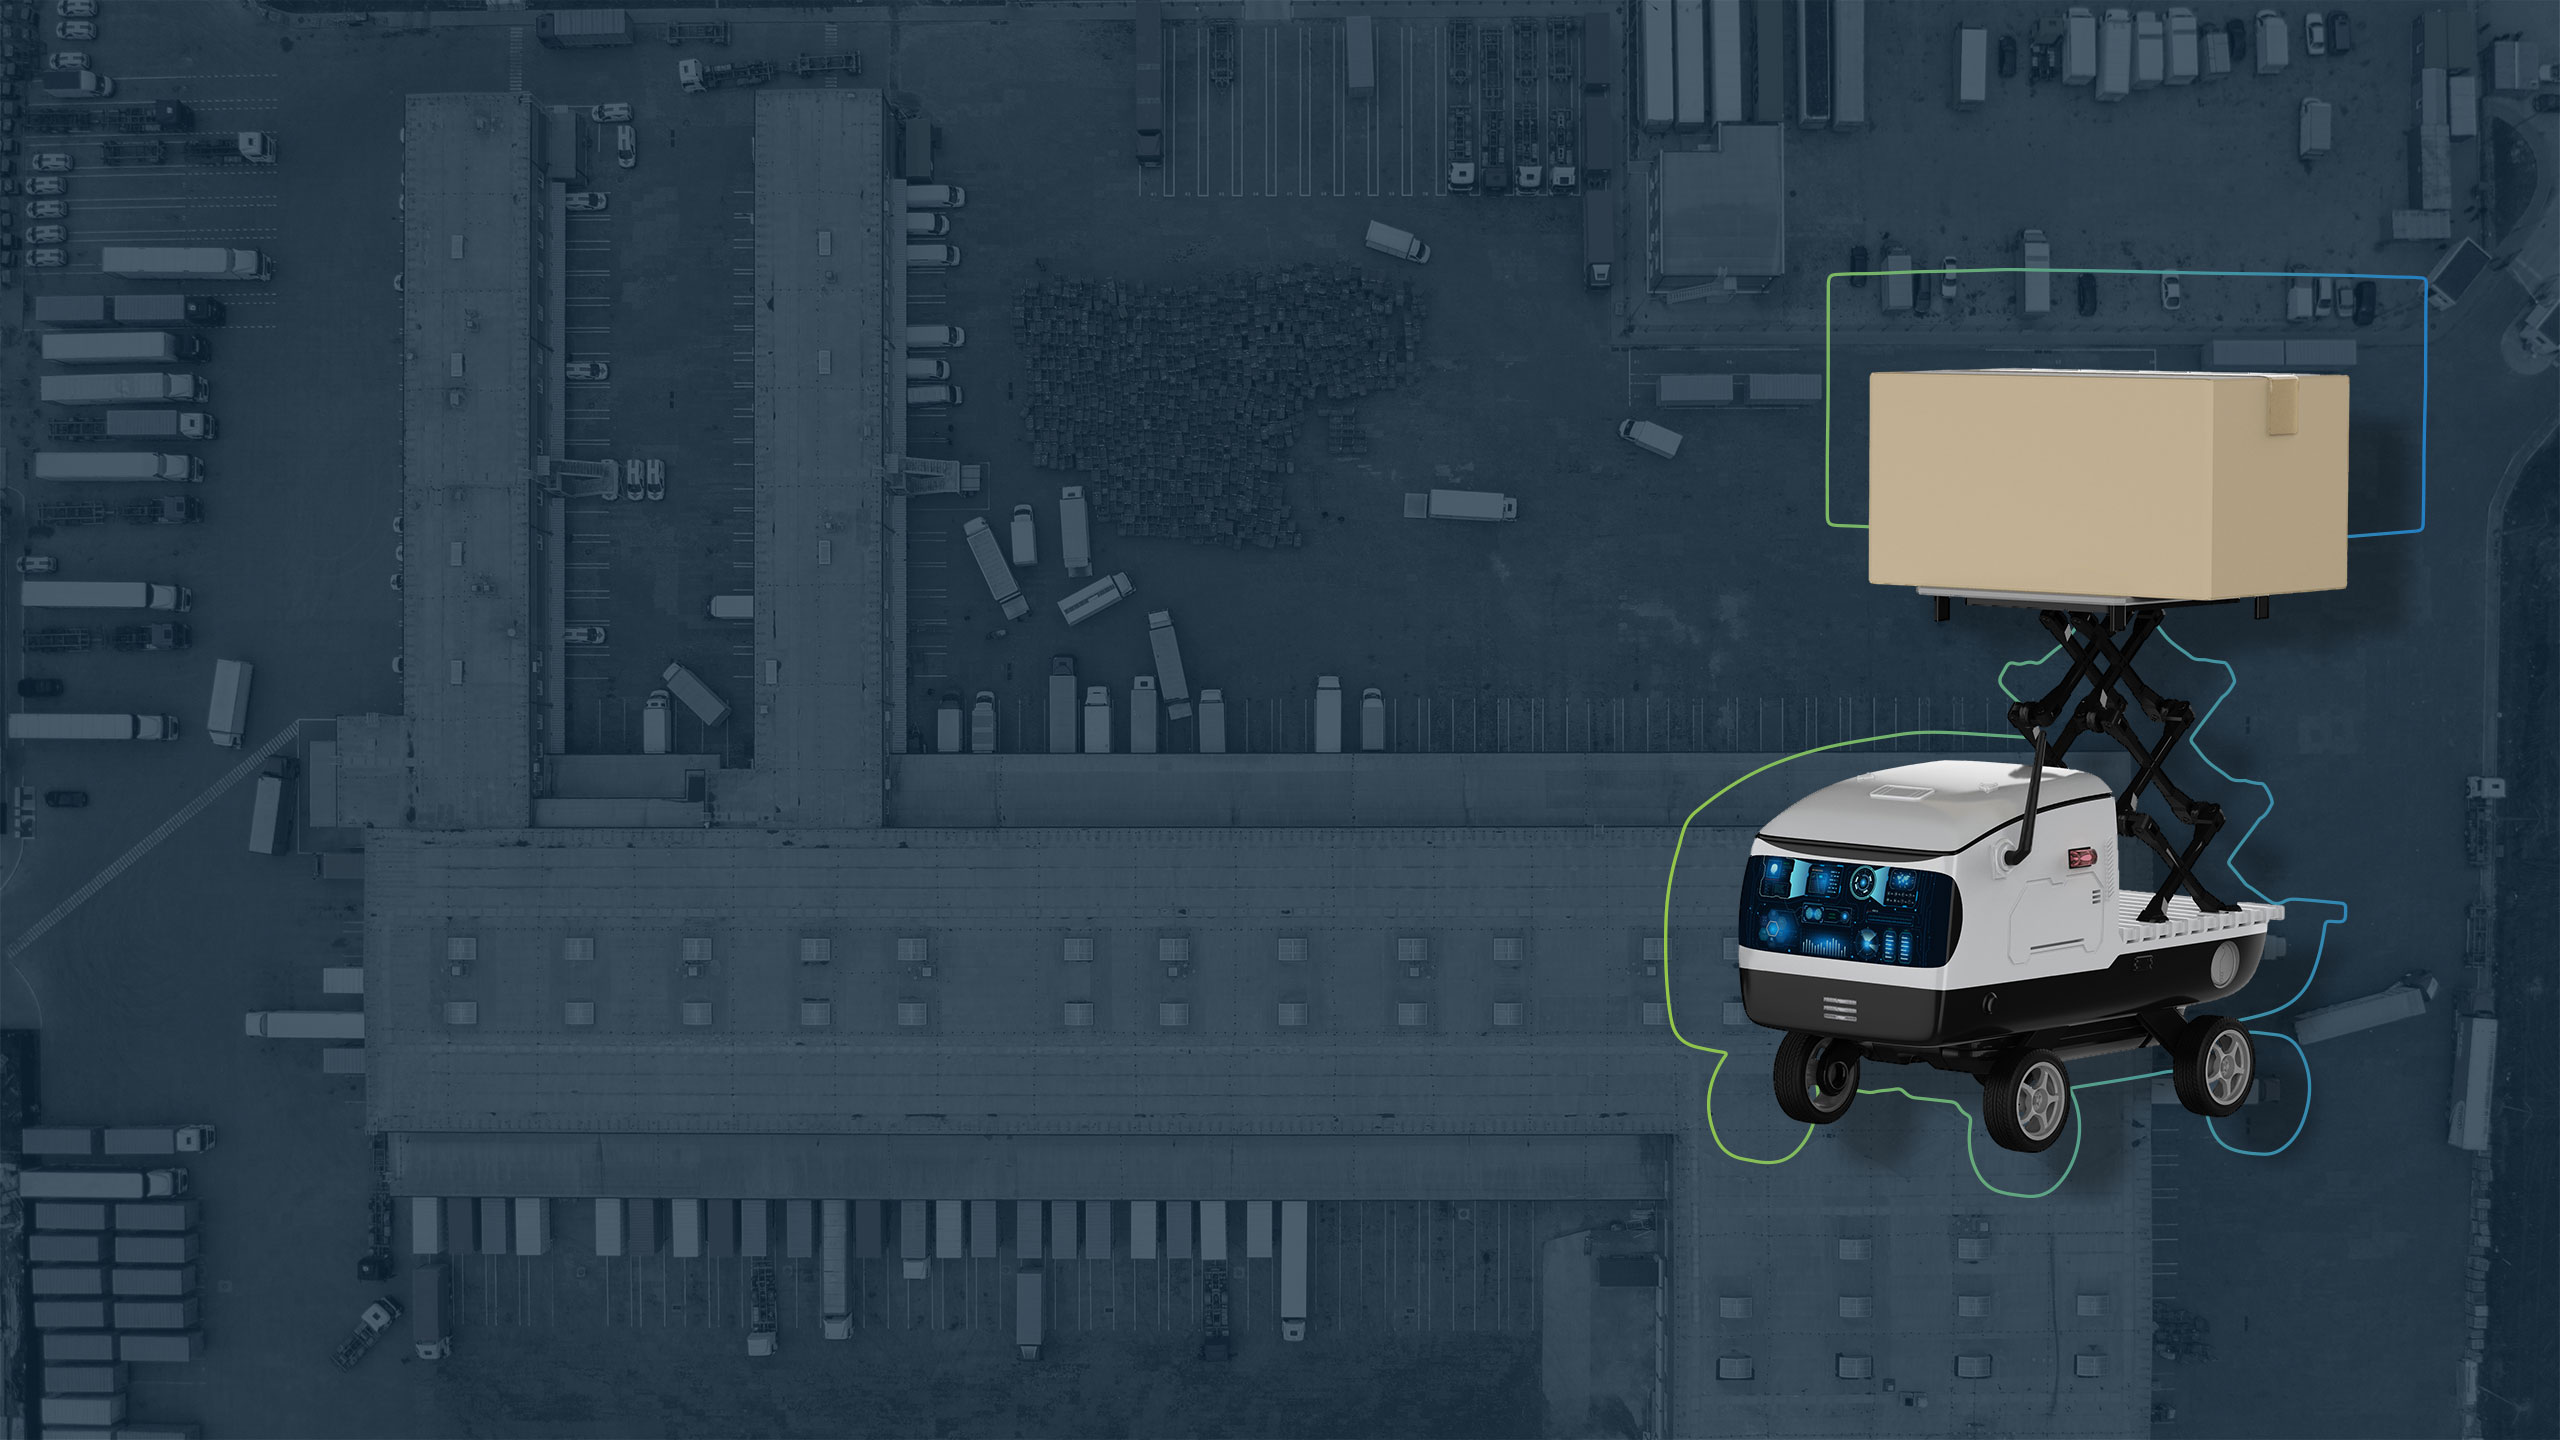 Headerbild zur Seite Logistikstrategie: zeigt einen fahrerlosen Transporter (FTS), der ein Paket trägt sowie ein Logistikzentrum von oben im Hintergrund